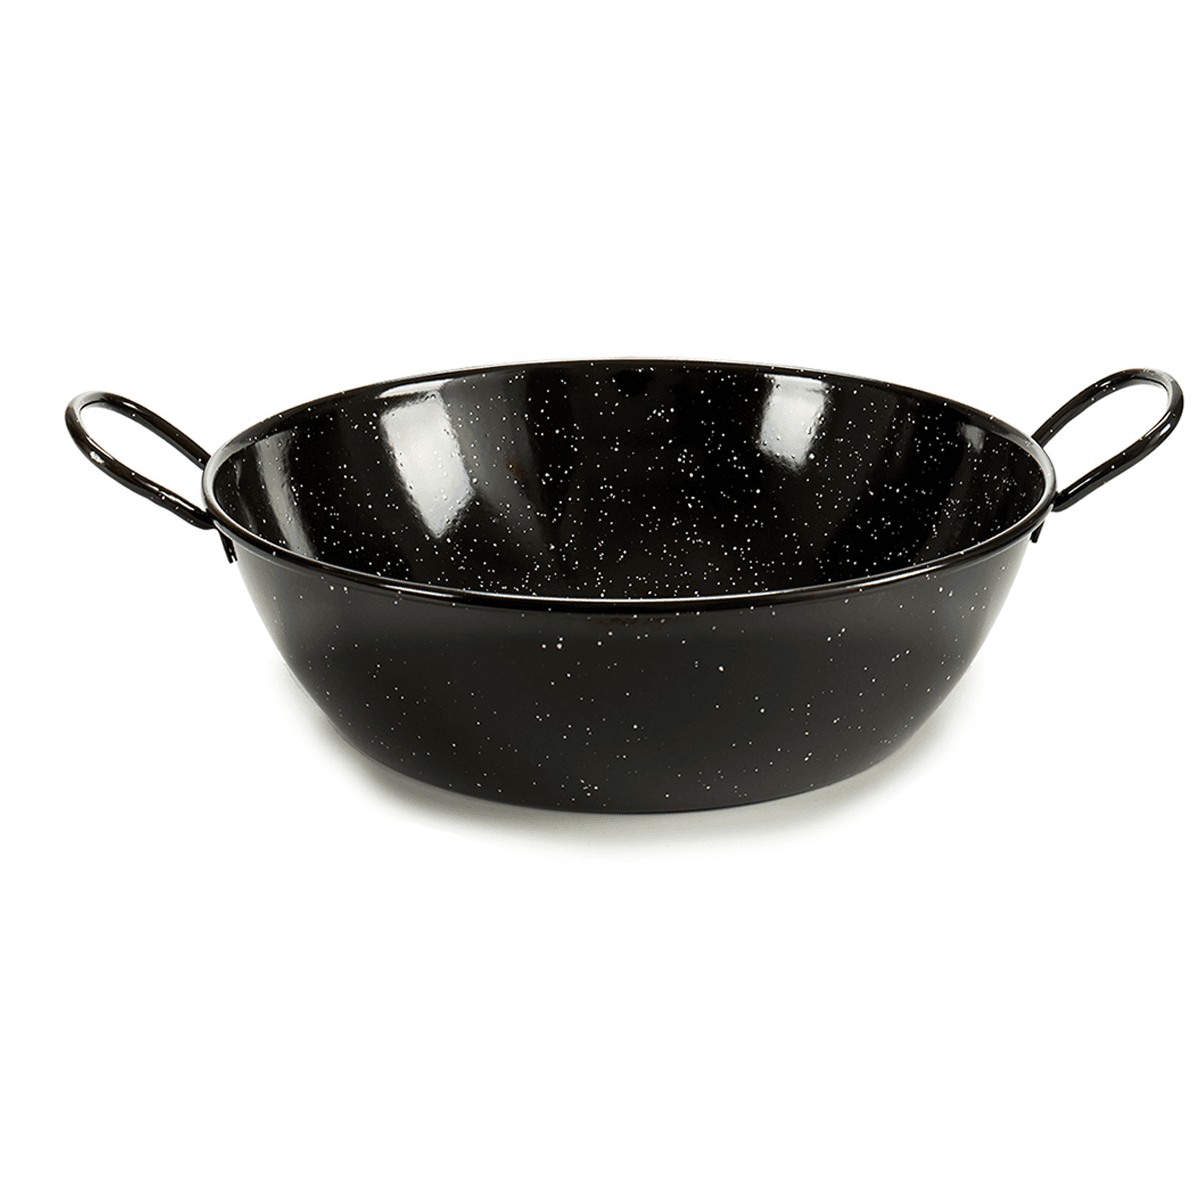 مقلاه عميقة للقلي قياس 36 سم من لا ديسا La Dehesa Black Deep Enameled Steel Frying Pan